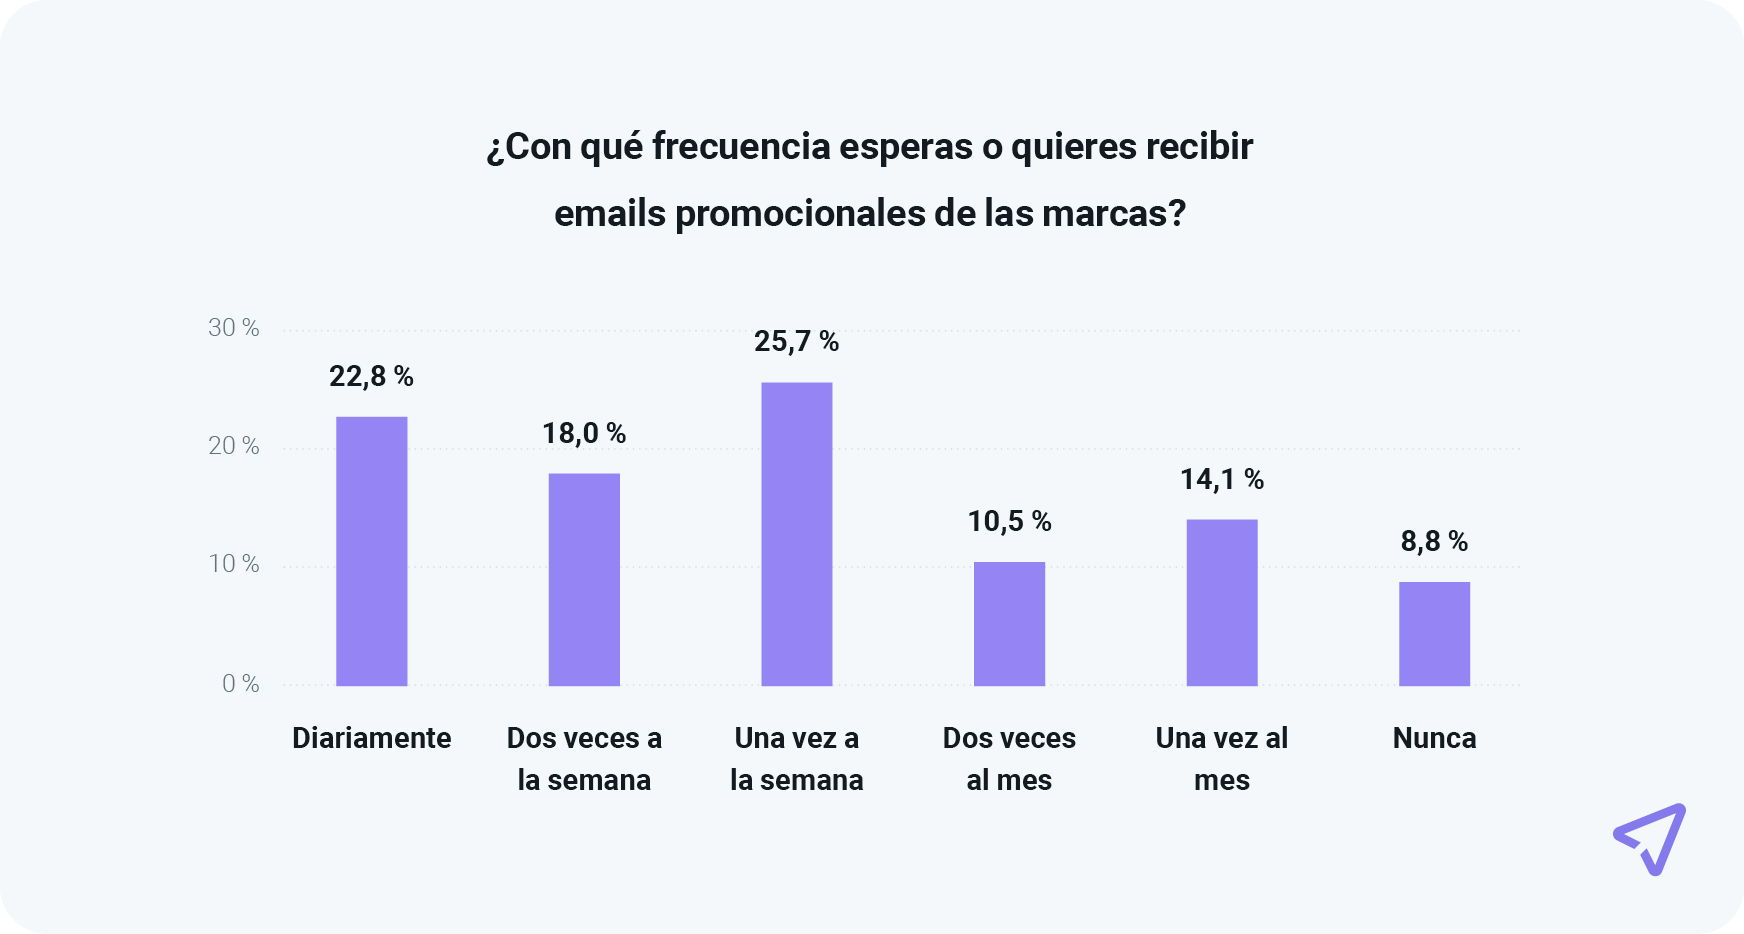 El gráfico muestra las distintas preferencias en cuanto a la frecuencia de los emails promocionales